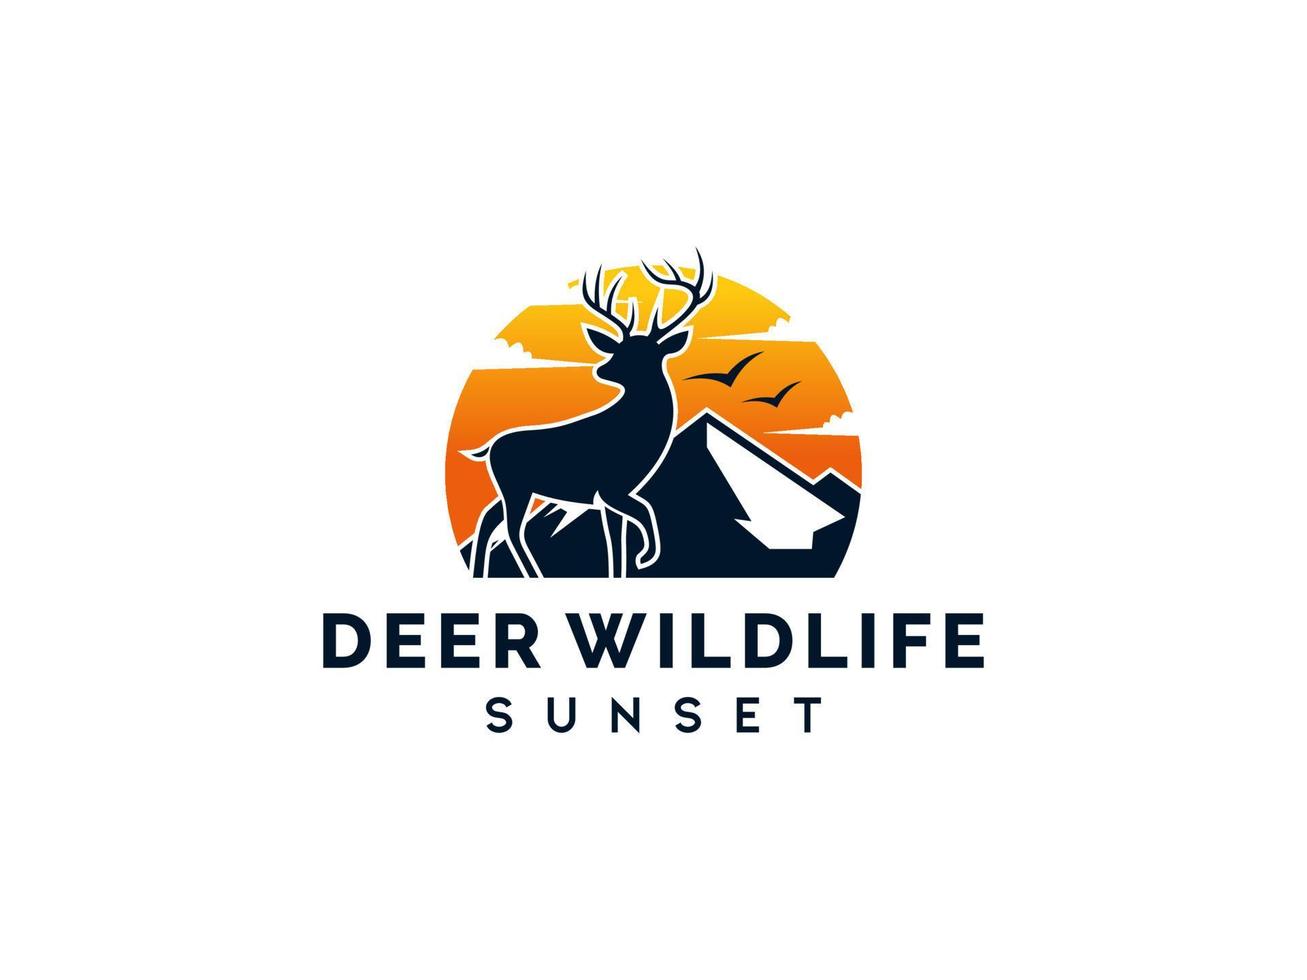 Inspiración en el diseño del logotipo de la puesta de sol de silueta de ciervo de ciervo de belleza. utilizable para logotipos comerciales y de marca. elemento de plantilla de diseño de logotipo de vector plano.